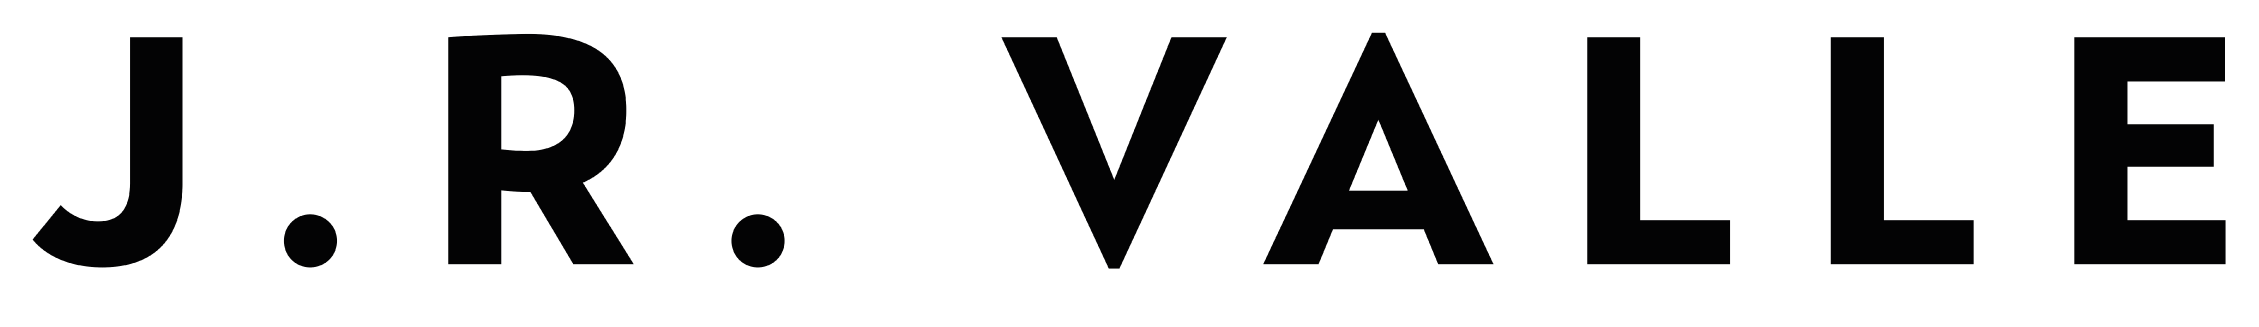 J.R.-Valle-motos-electricas-logo-negro